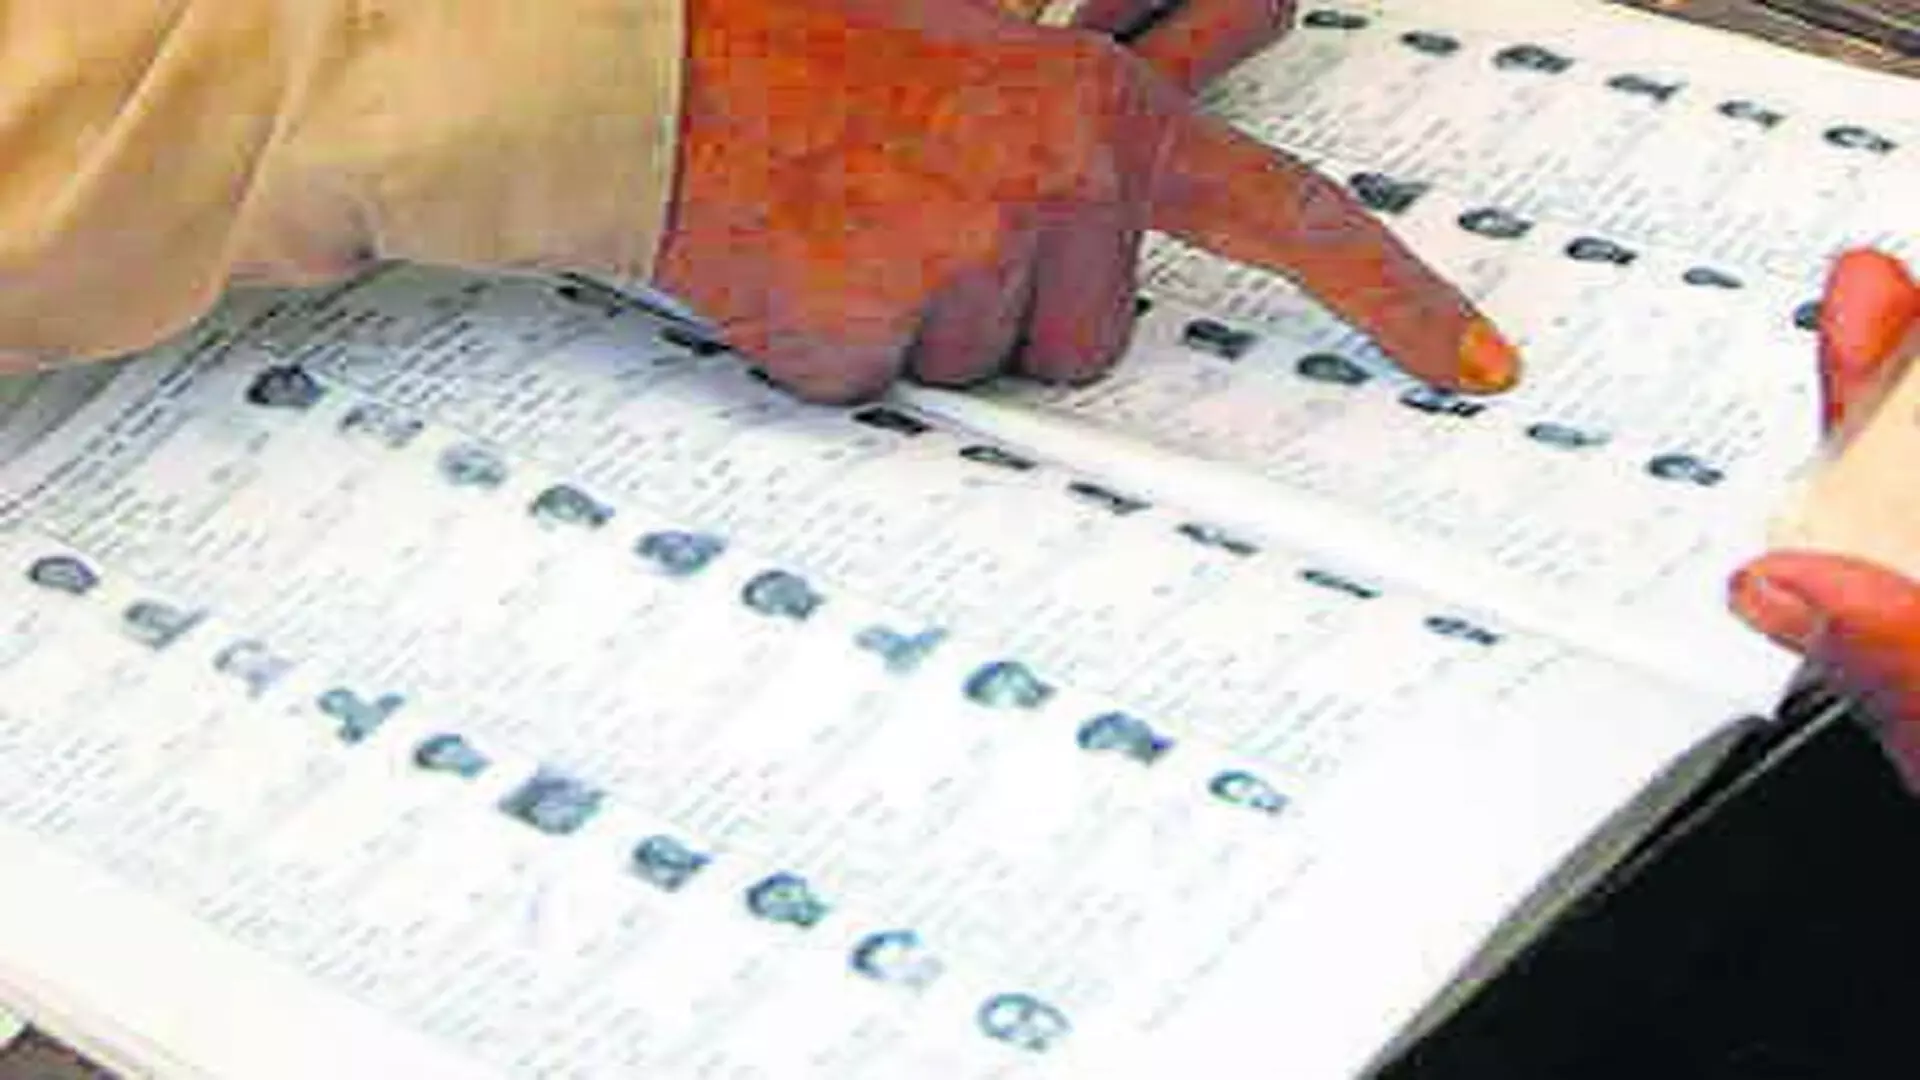 कश्मीरी प्रवासियों को अब लोकसभा चुनाव में वोट देने के लिए फॉर्म एम भरने की जरूरत नहीं